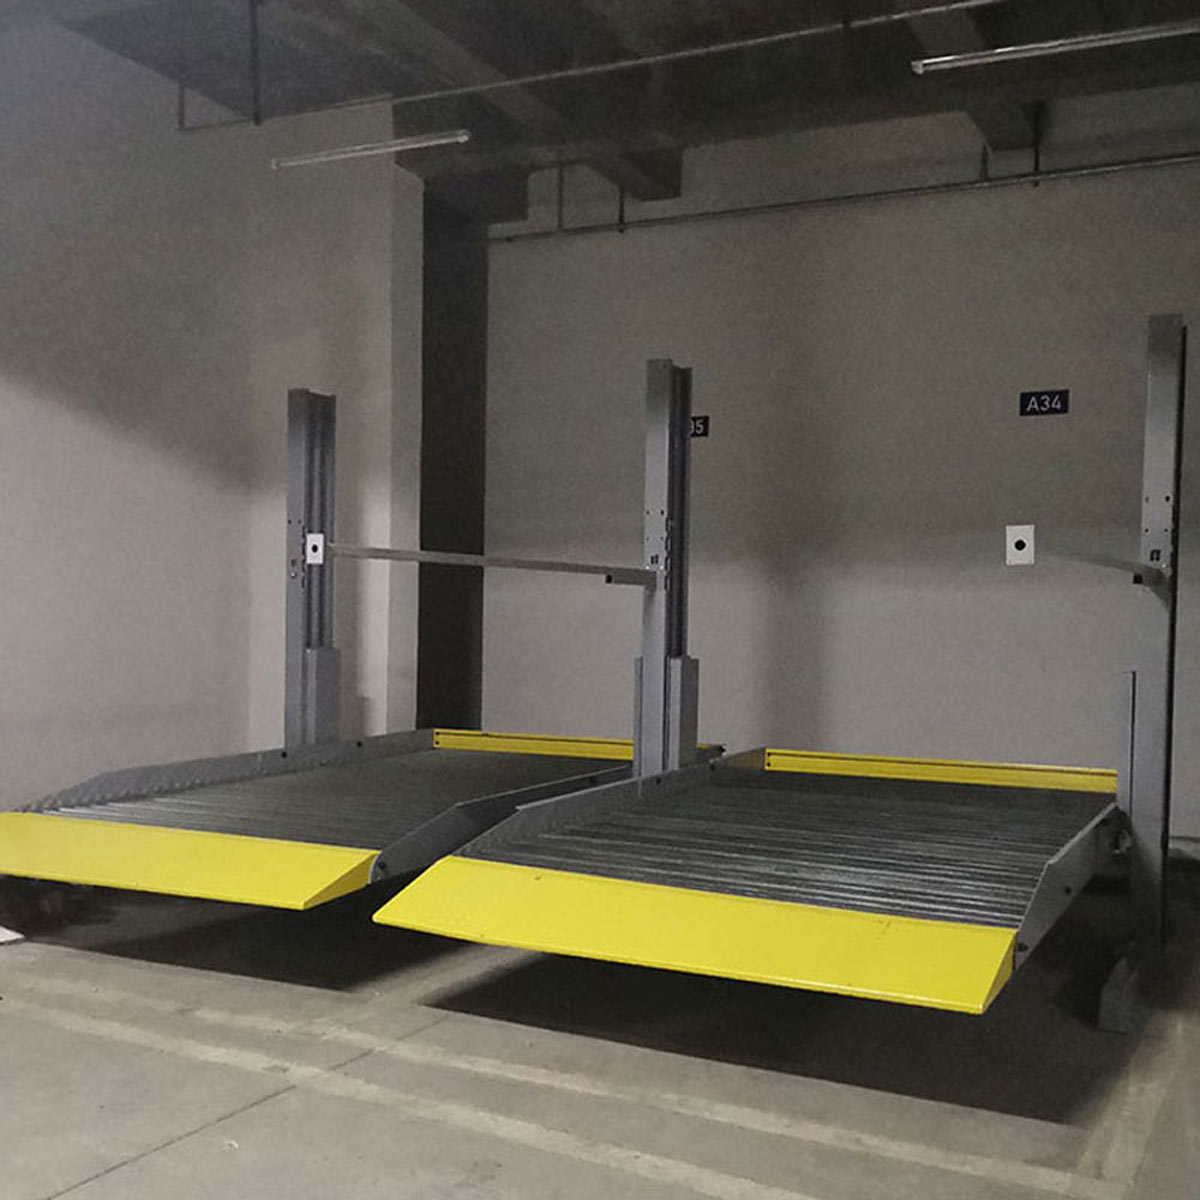 神木自動化停車庫的設計思路